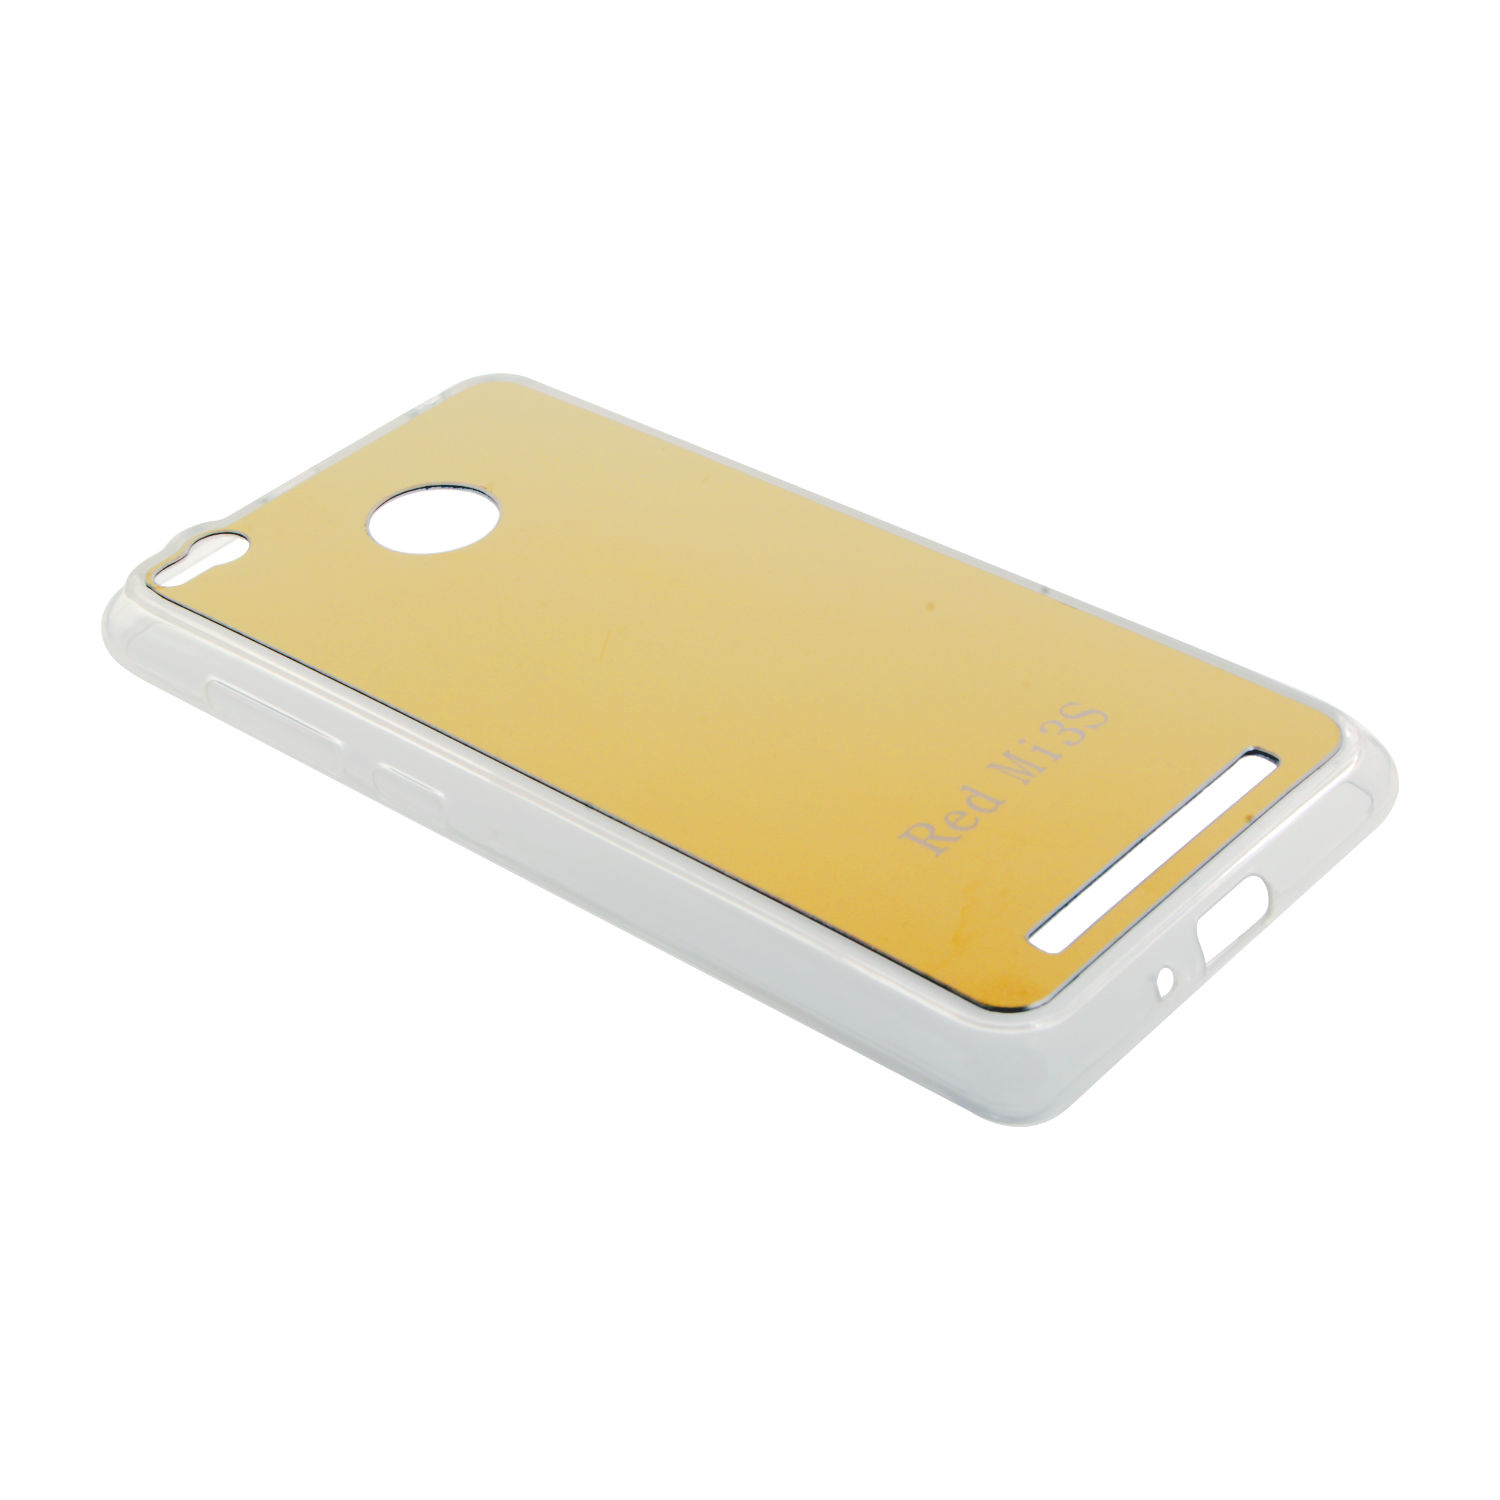 Накладка Xiaomi Redmi 3s силиконовая зеркальная золото